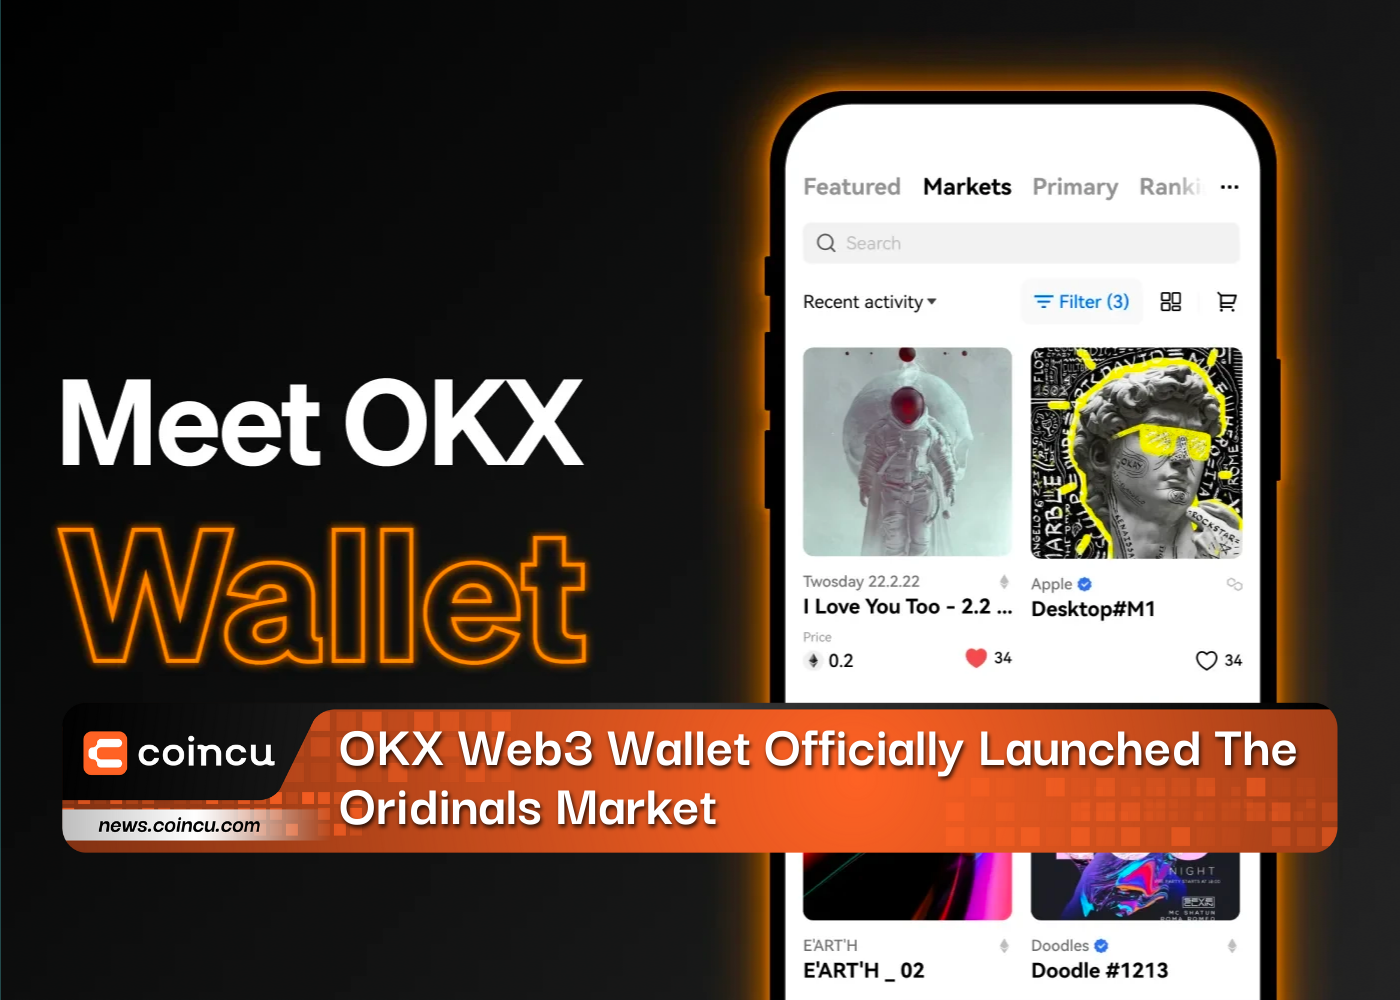 کیف پول OKX Web3 به طور رسمی بازار Oridinals را راه اندازی کرد